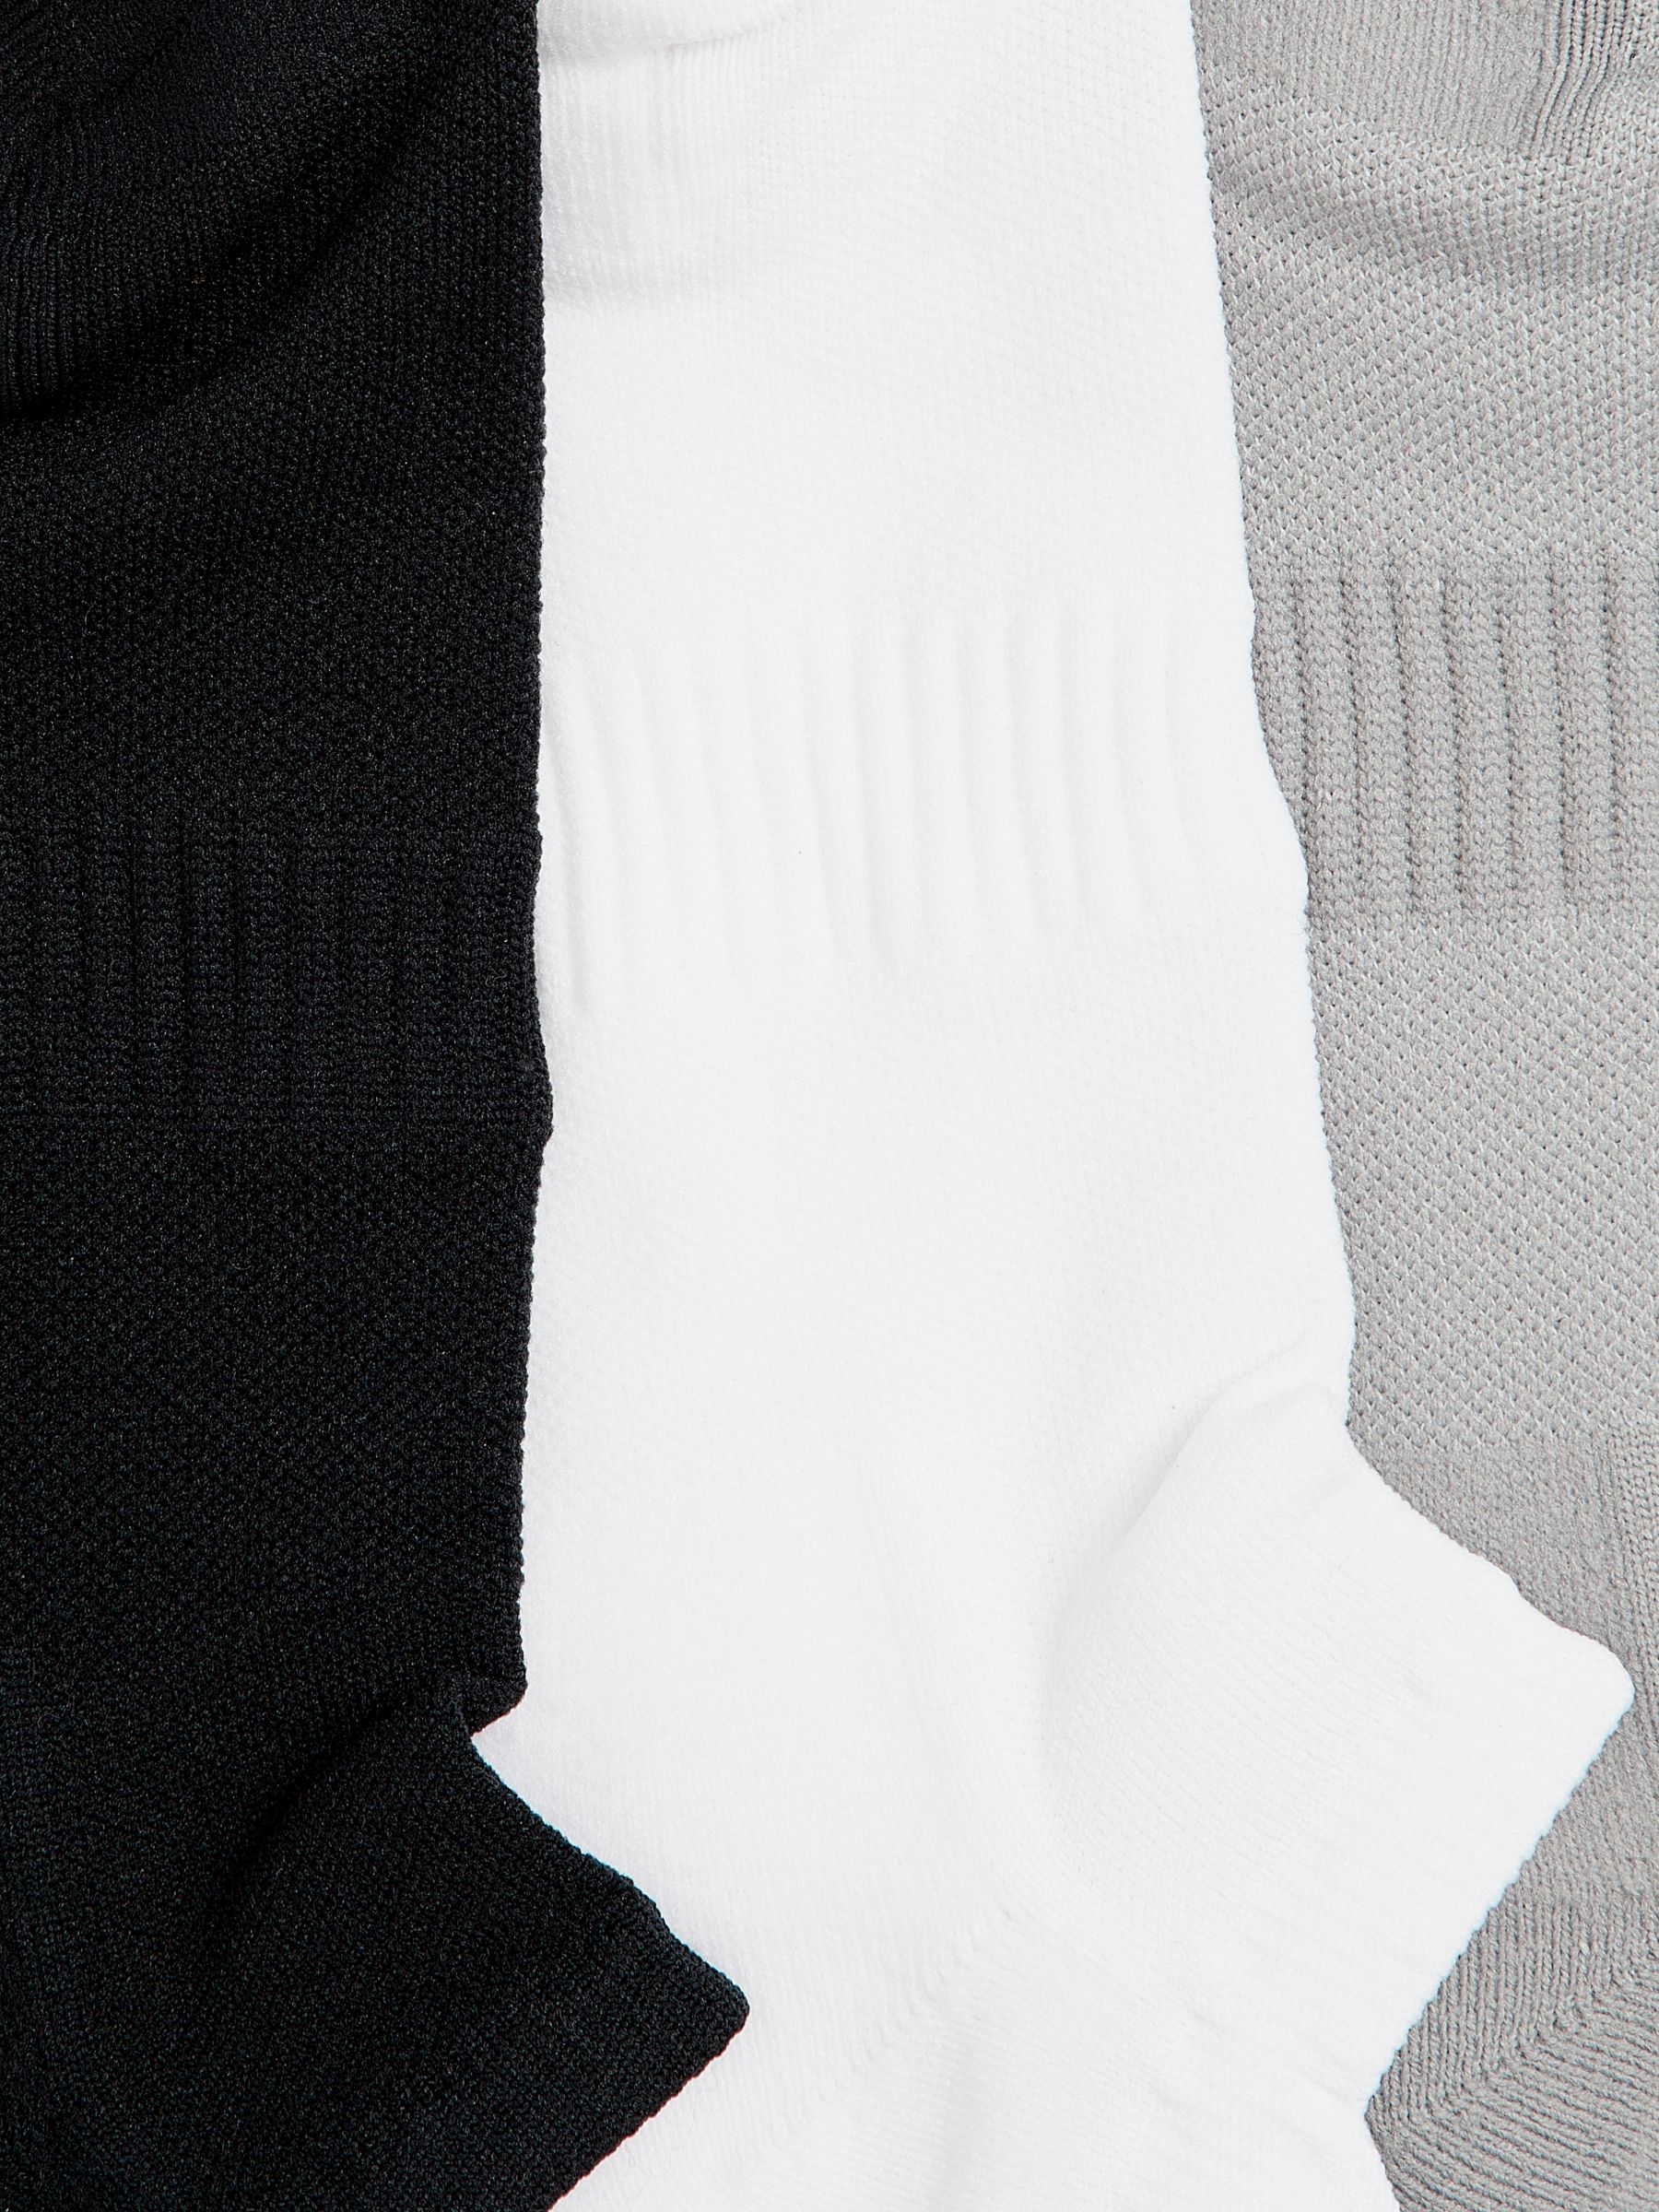 Buy John Lewis Men's Training Socks, Pack of 3, Black/Grey/White Online at johnlewis.com